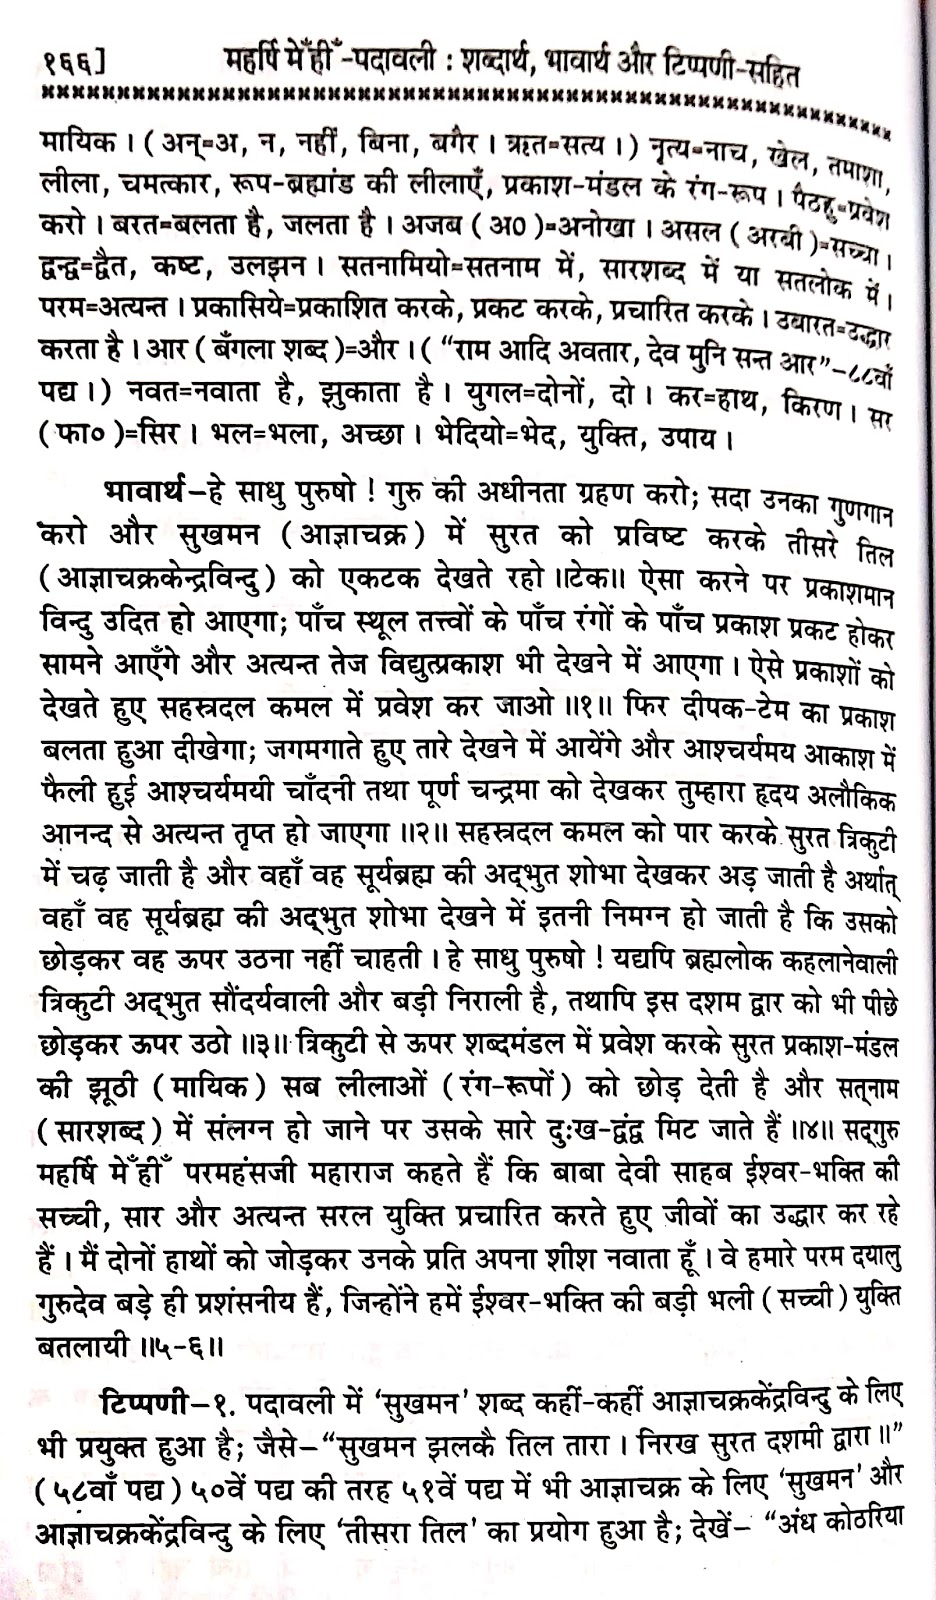 P50, Benefits of Being Gurmukhi, "गुरु के शरण गहु, धन धन गुरु कहु,...'' महर्षि मेंहीं पदावली भजन अर्थ सहित। पदावली भजन 50 भावार्थ और टिप्पणी। गुरुमुखी भक्त कौन?